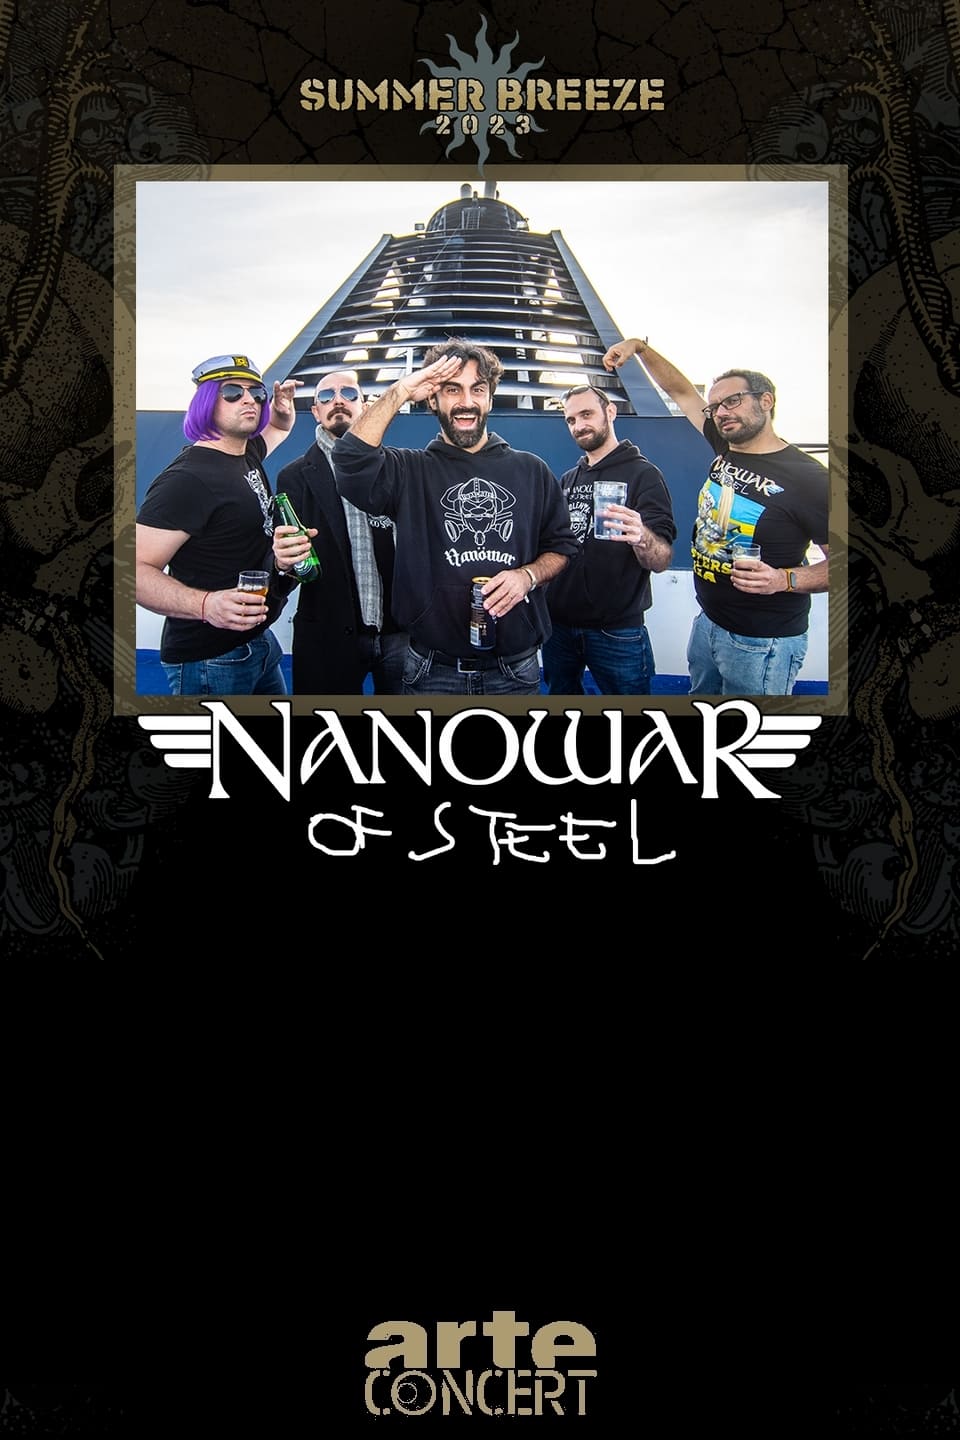 Nanowar of Steel - Summer Breeze 2023